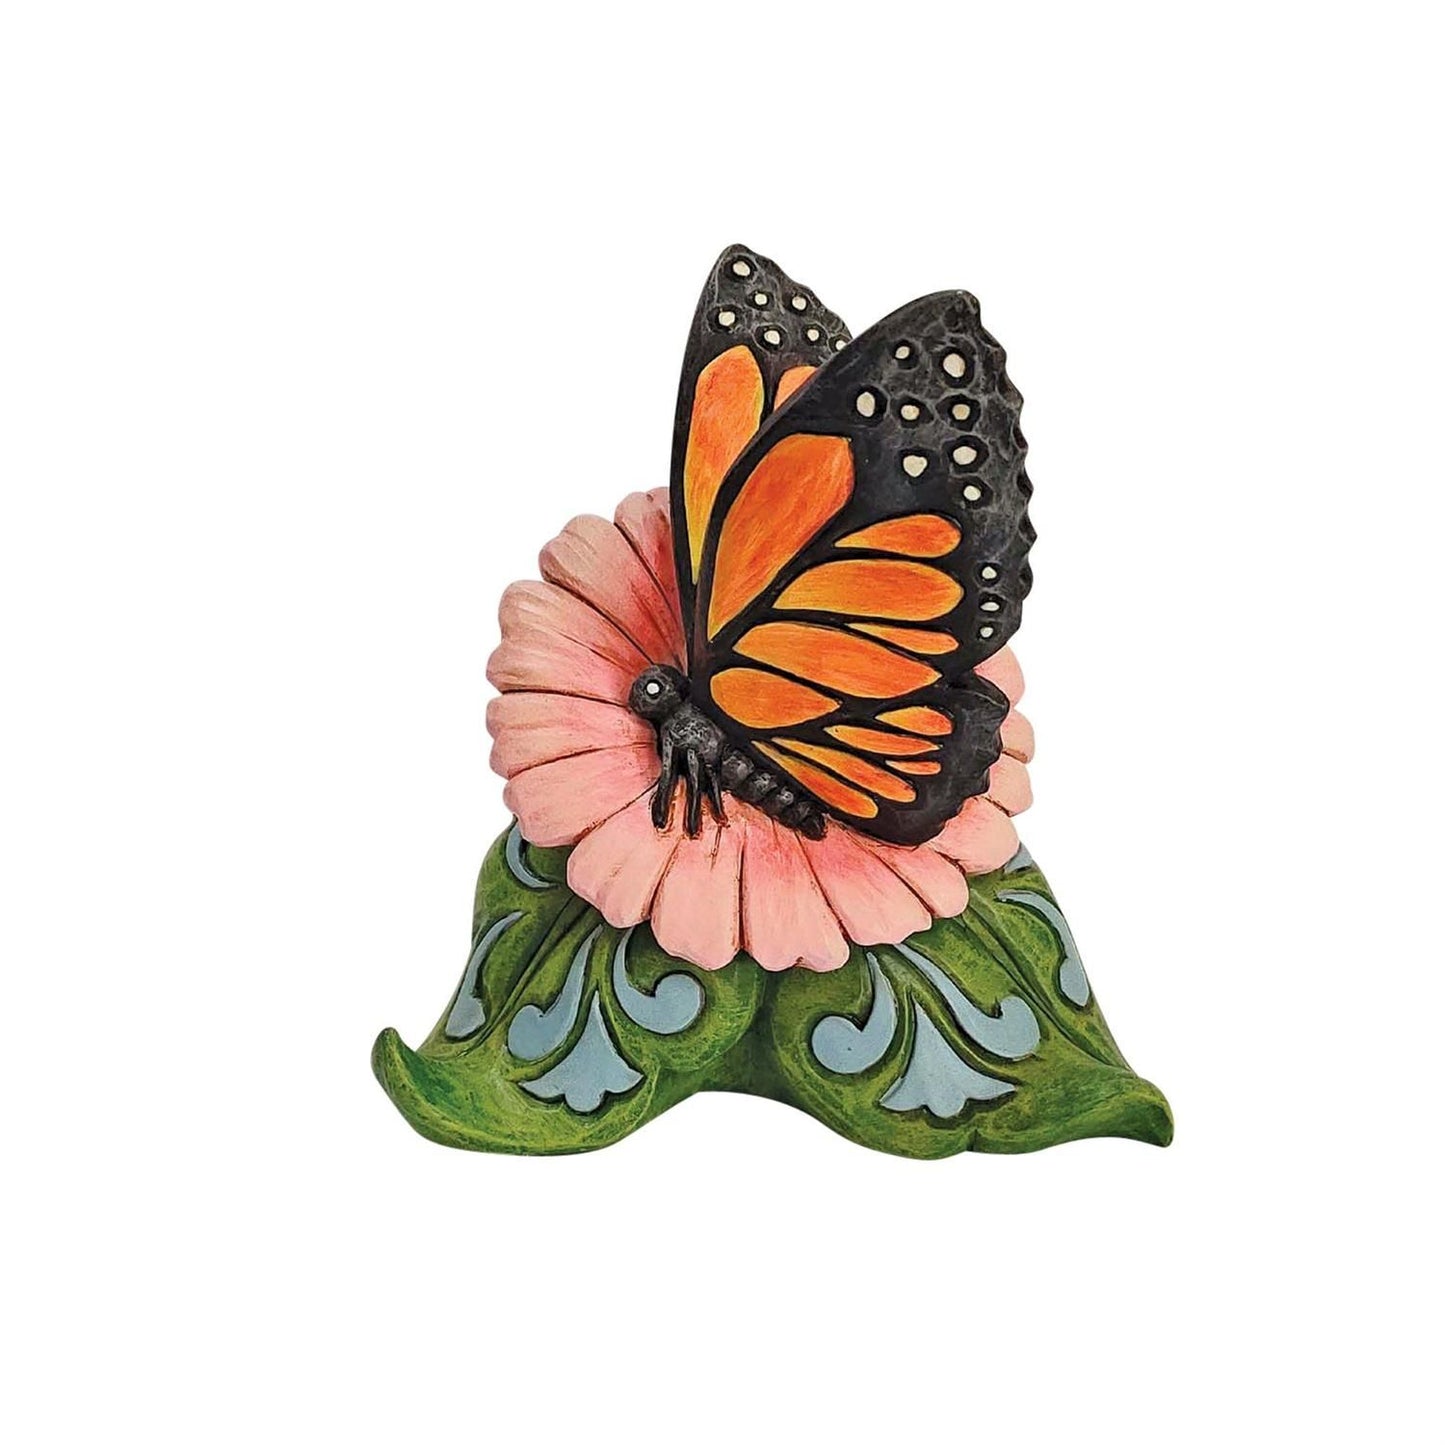 Enesco Jim Shore Heartwood Creek Monarch Butterfly Mini Figurine